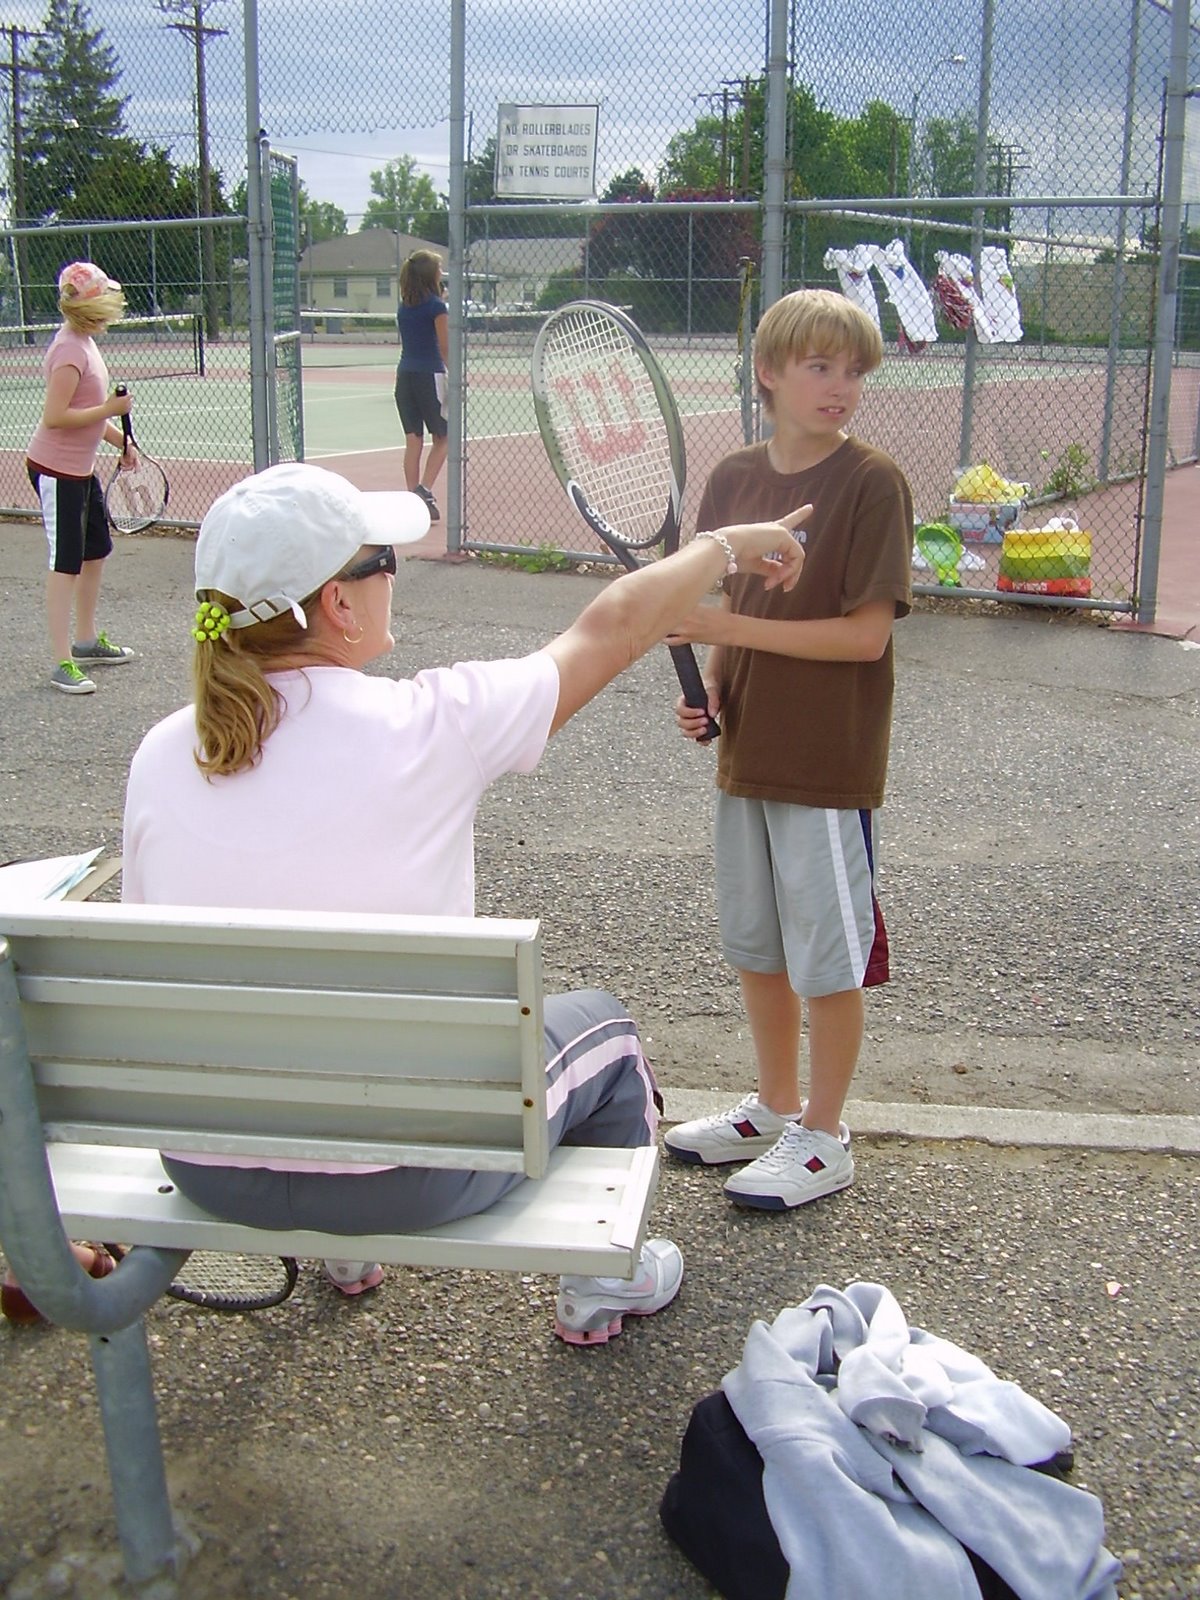 [Kade+tennis+2008.jpg]